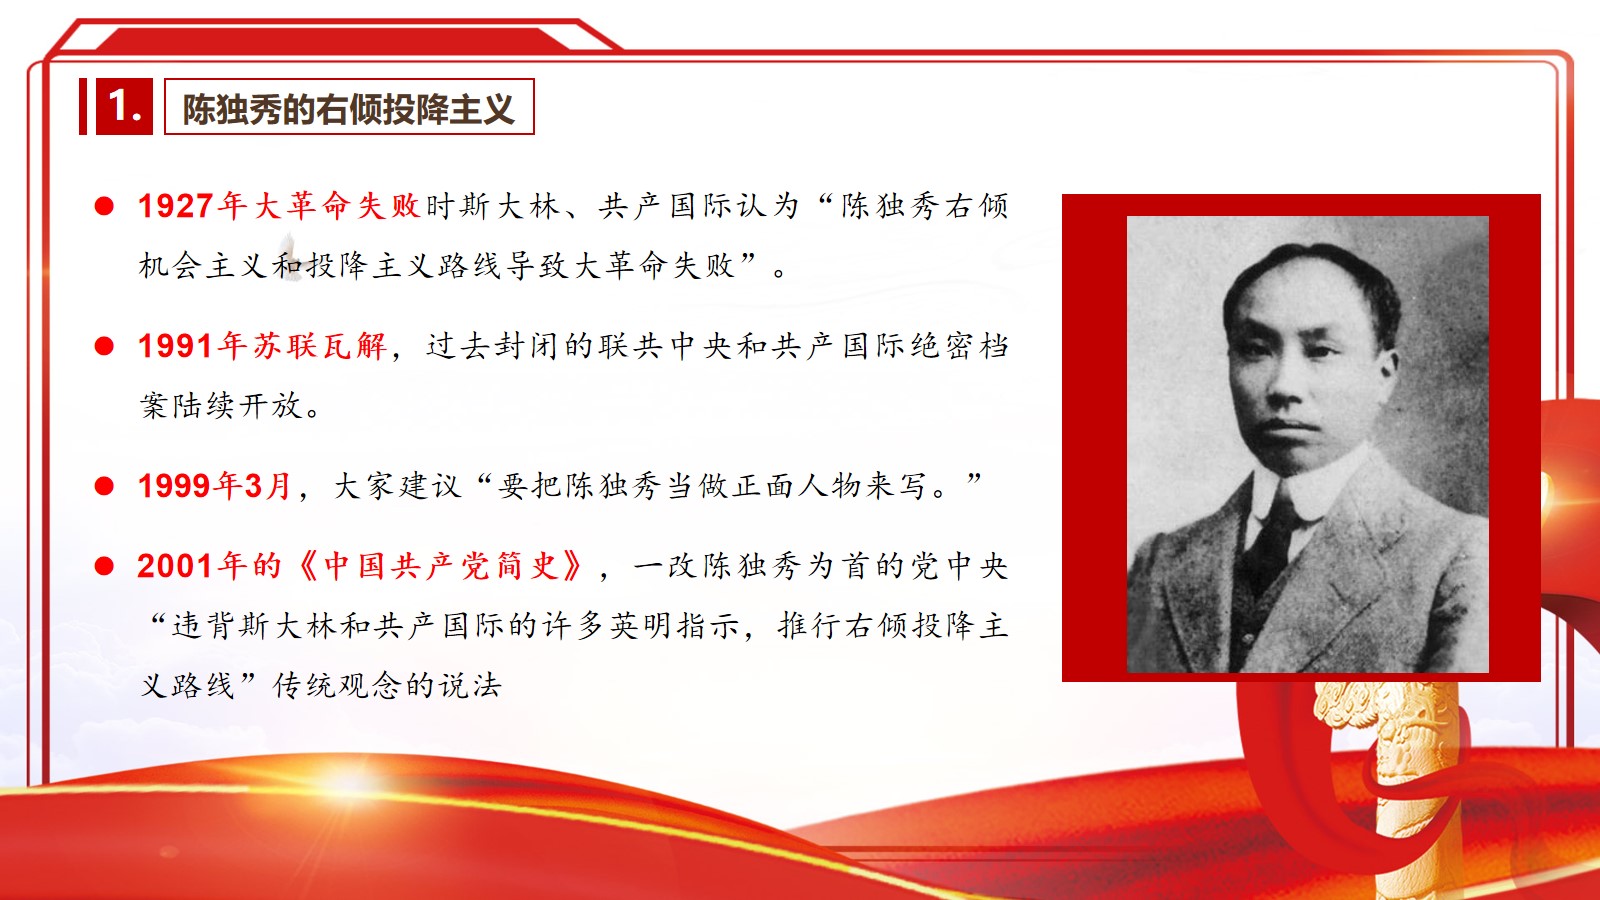 2.江泽民同志关于学习党史的论述